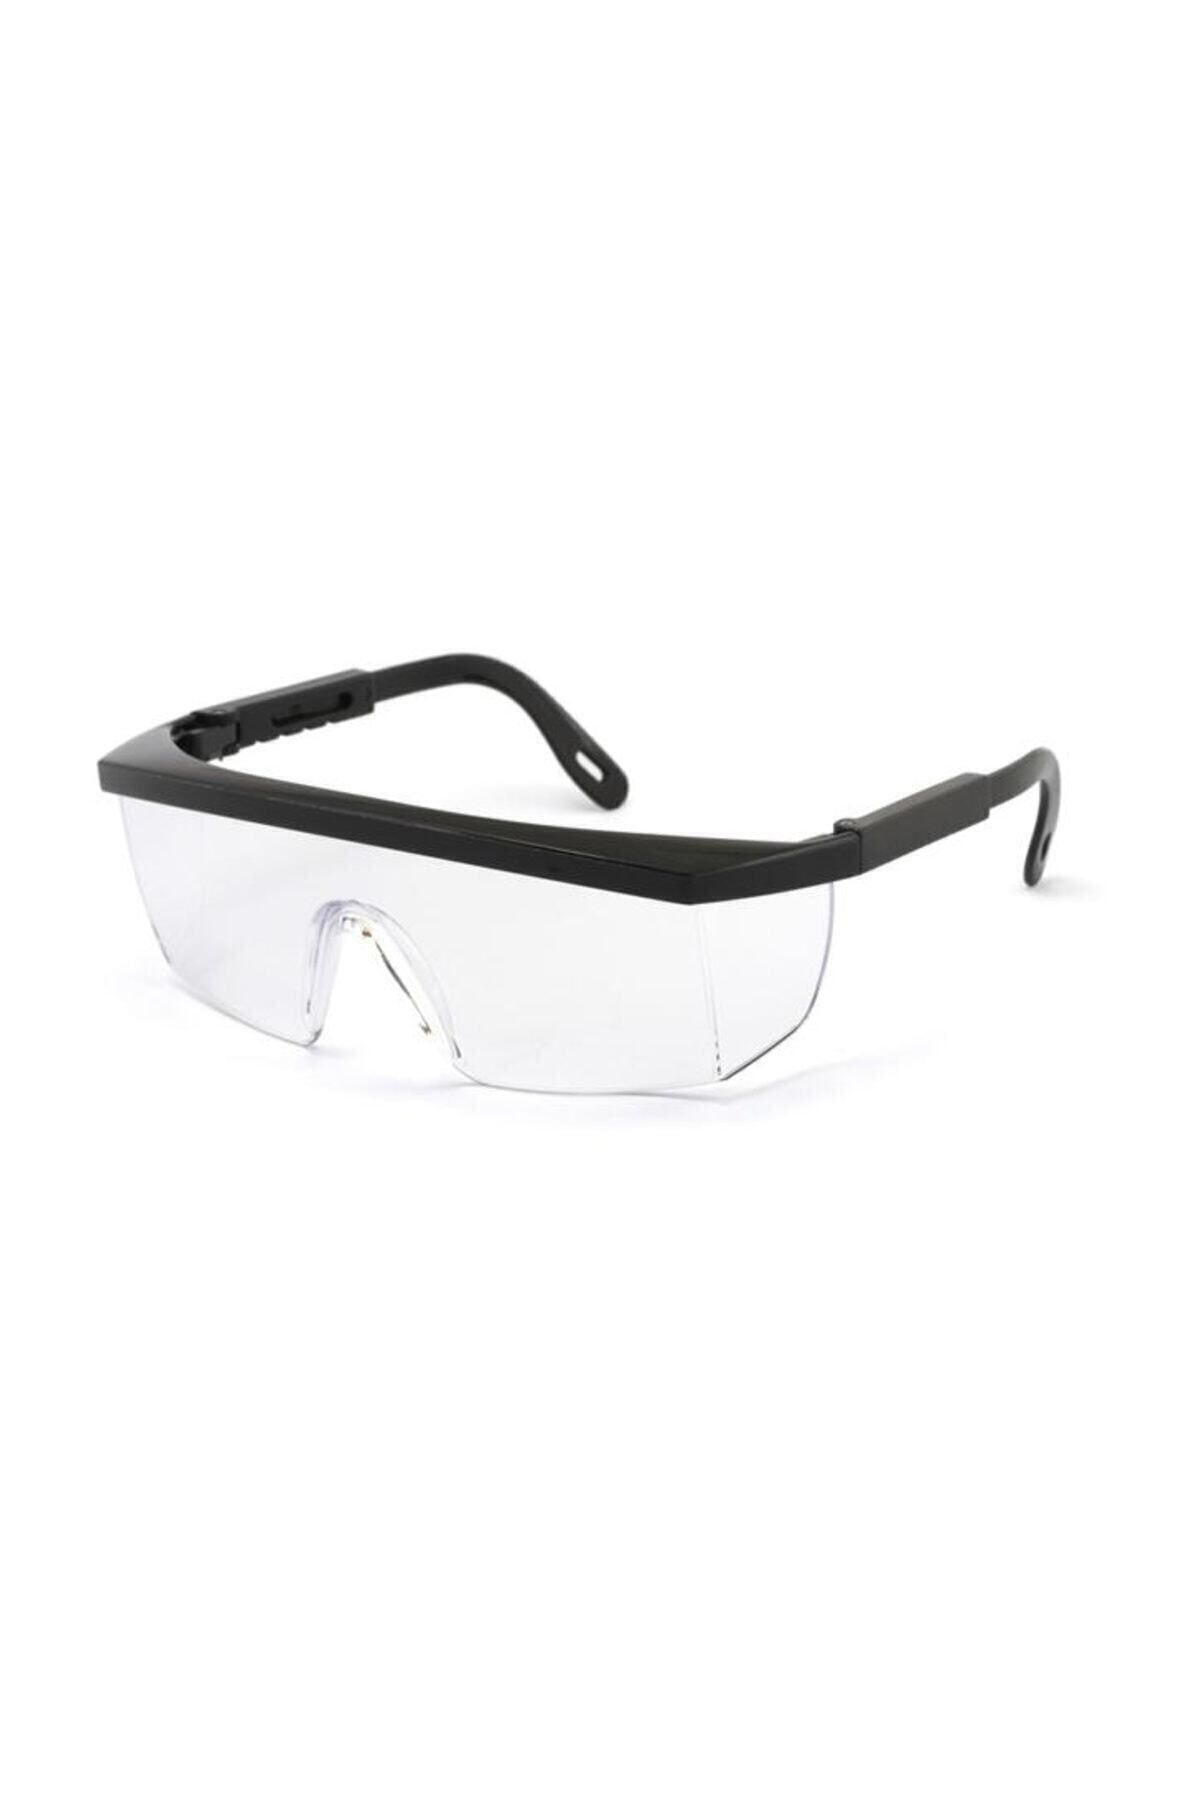 Viola Valente Beyaz Camlı Classic Çapak Gözlüğü Koruyucu Gözlük